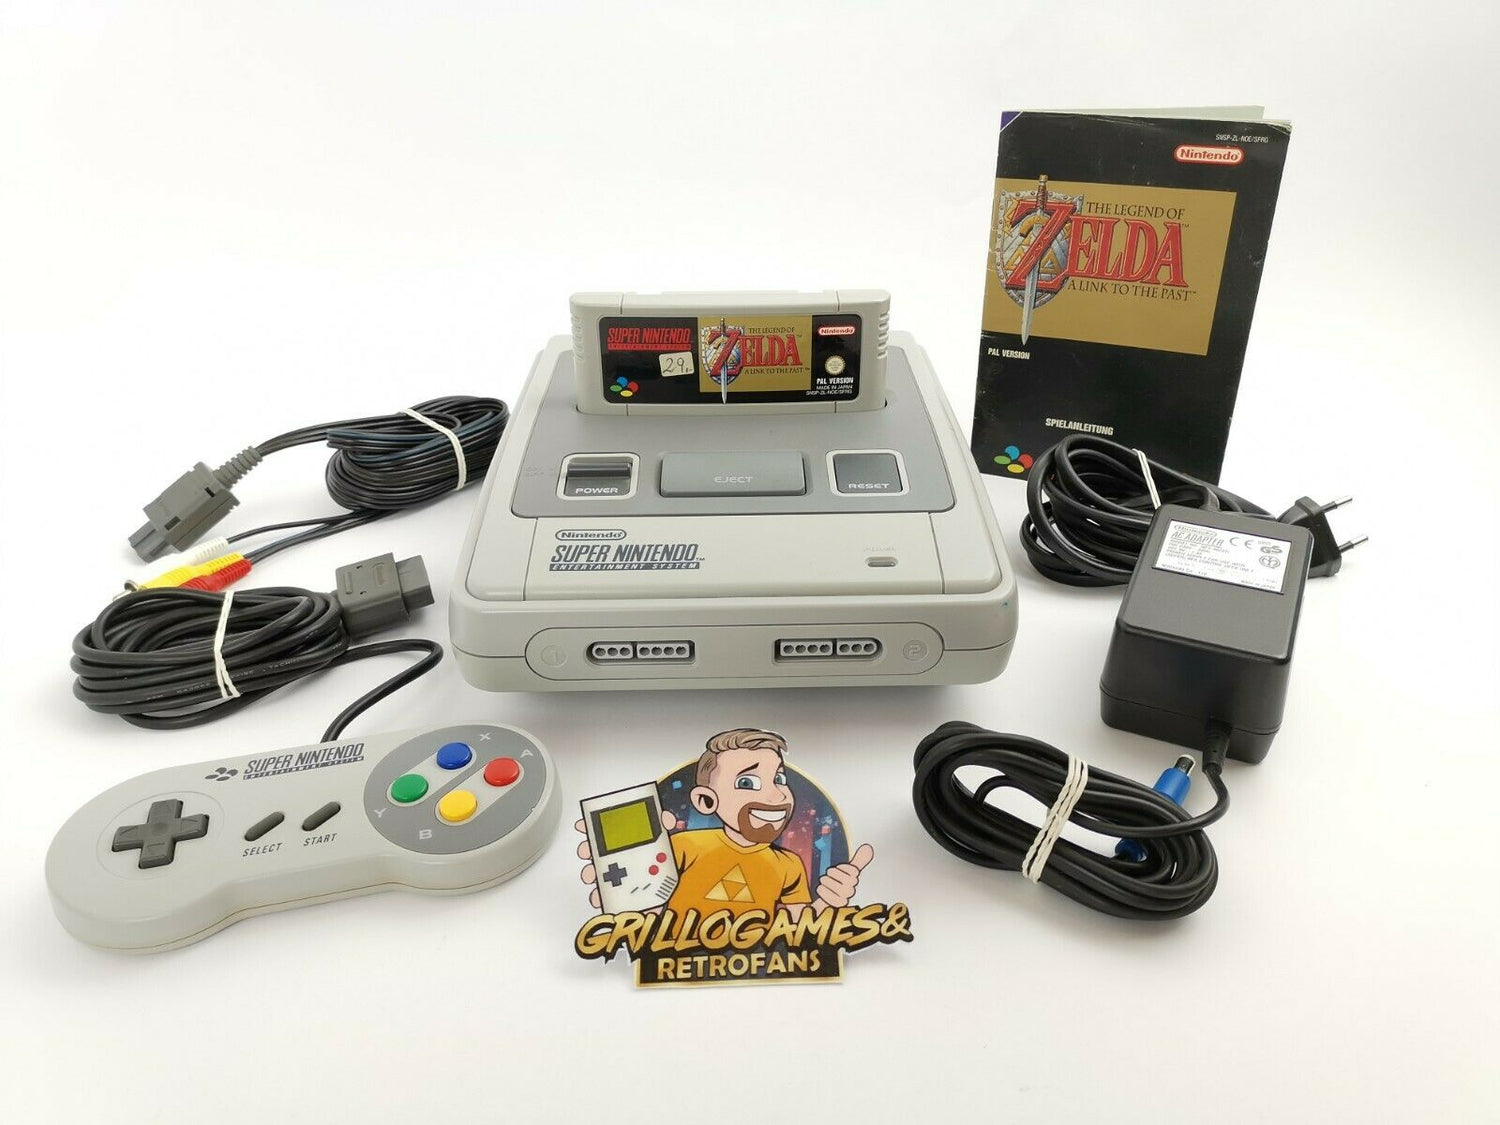 Super Nintendo Konsolen Set mit The Legend of Zelda, 1 Control. und Kabeln |SNES